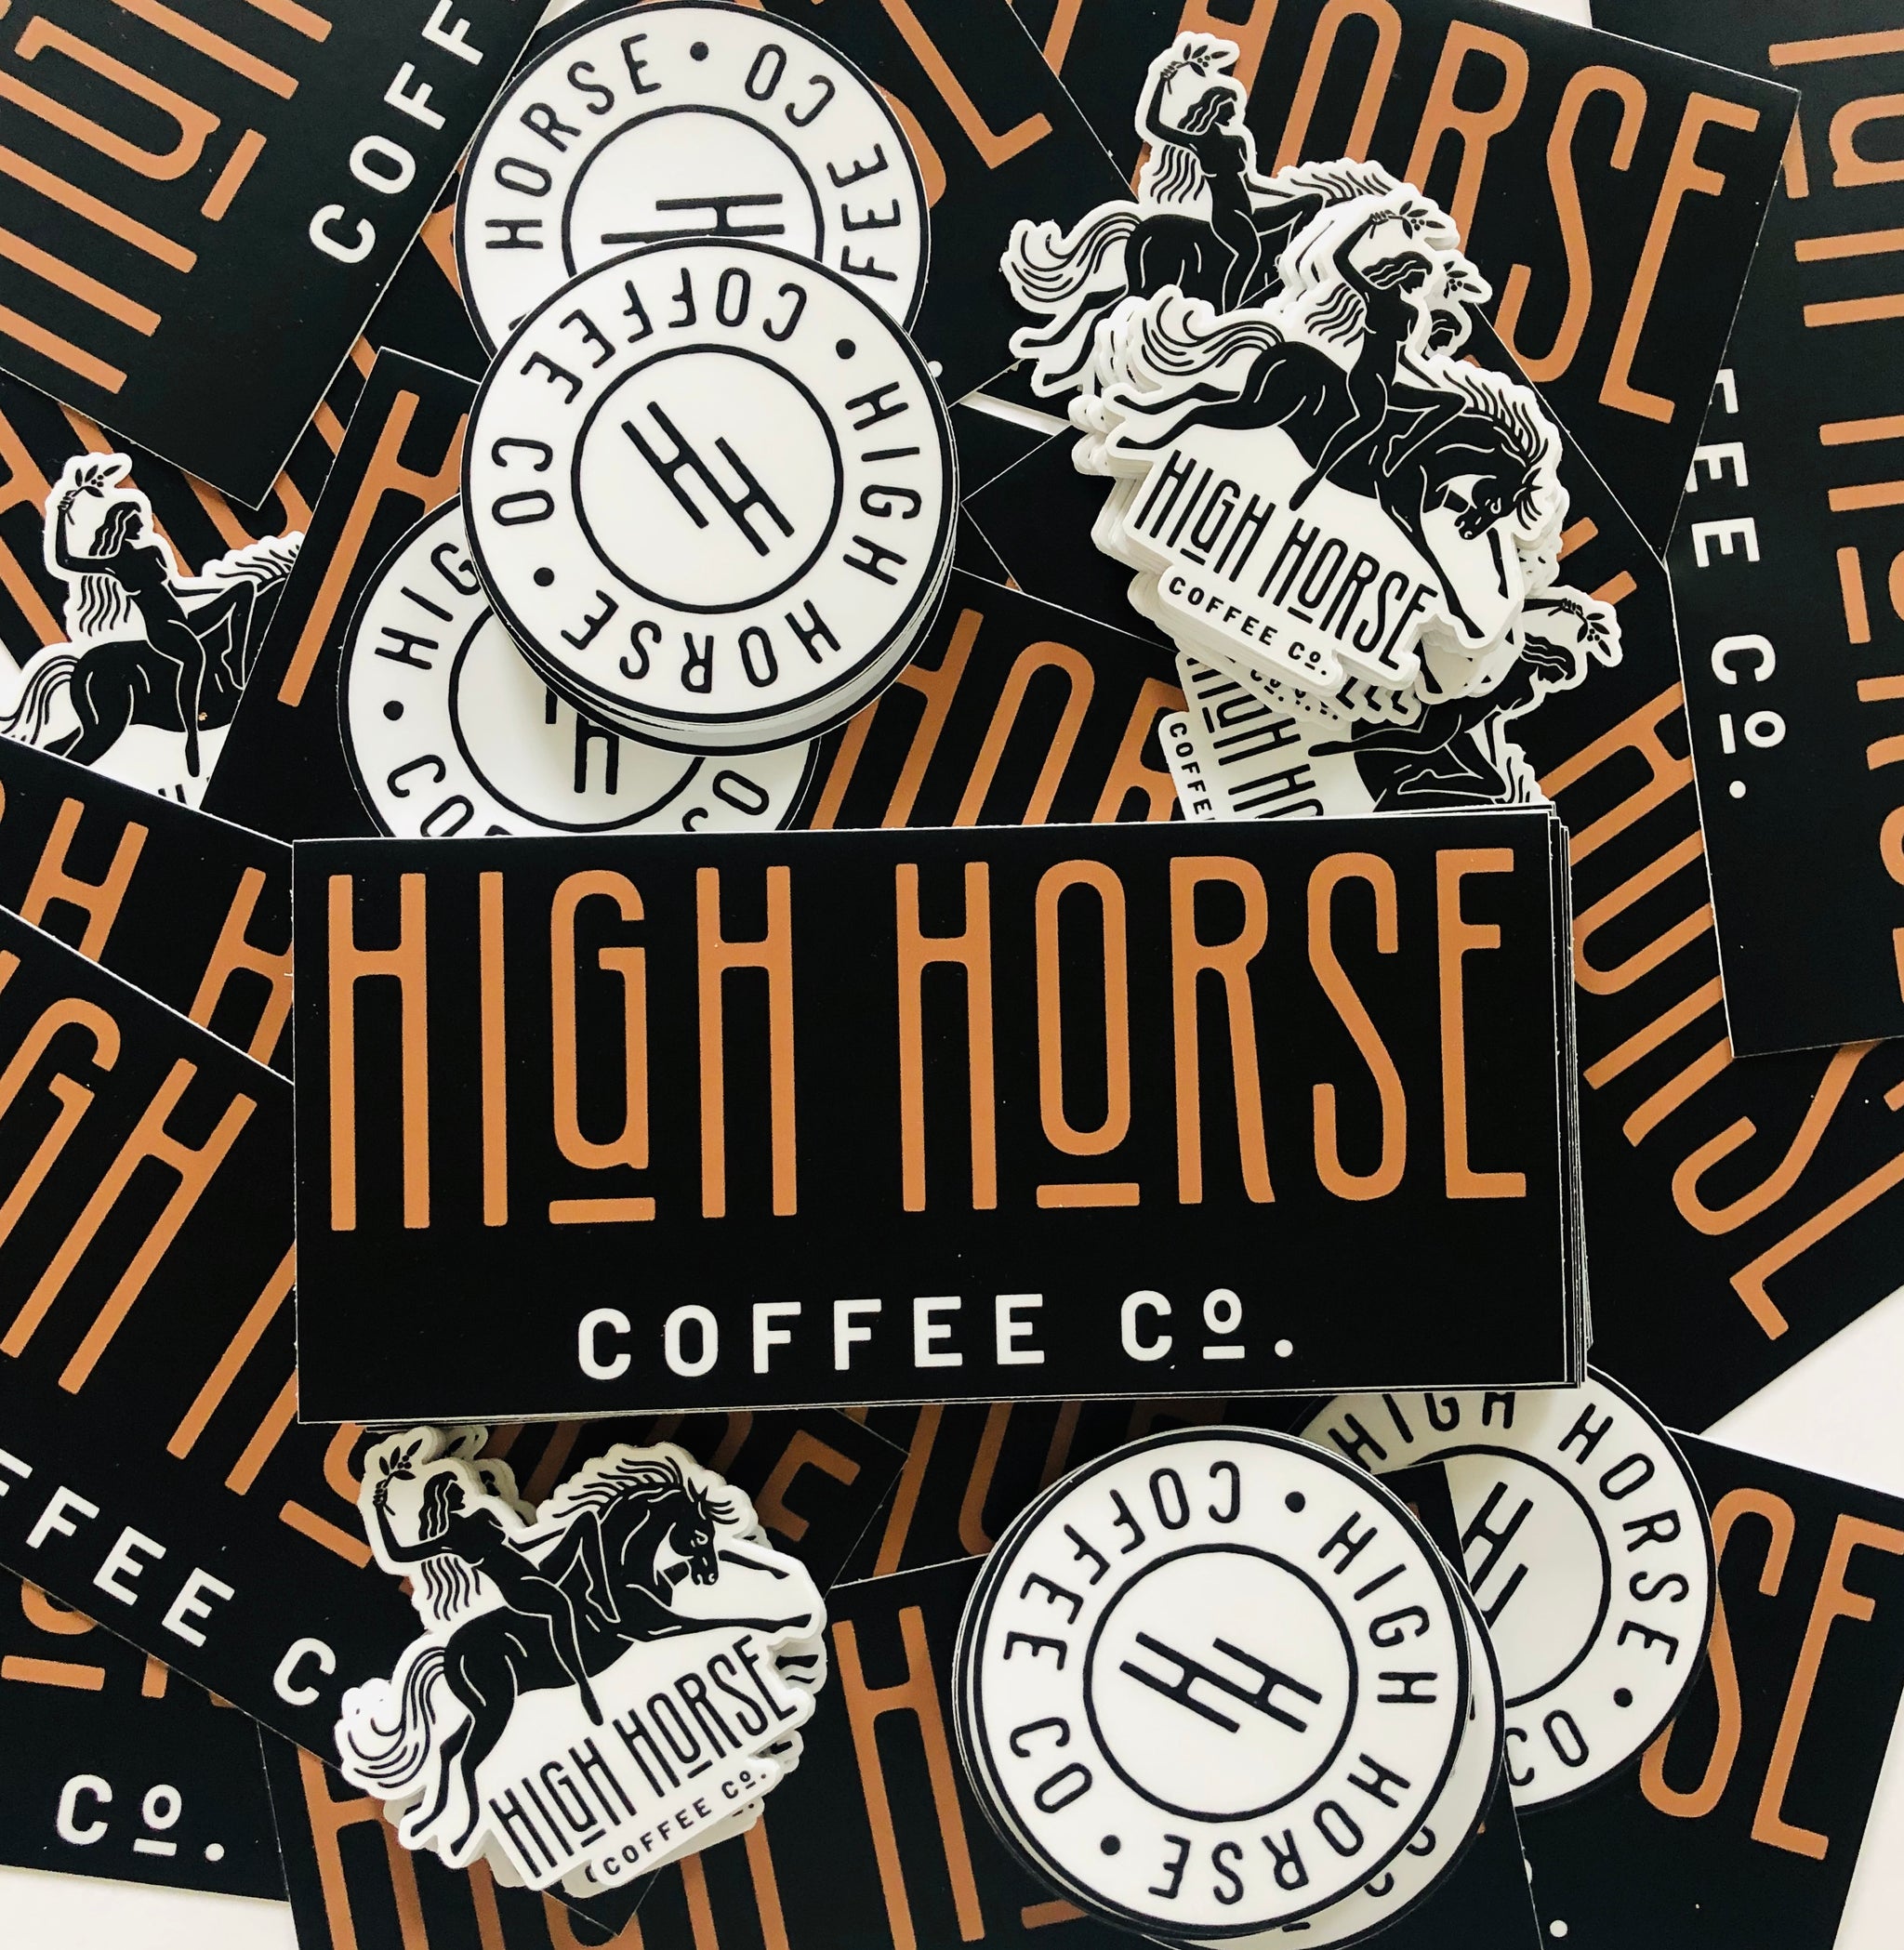 $2 Bumper Specials - High Horse Coffee Company